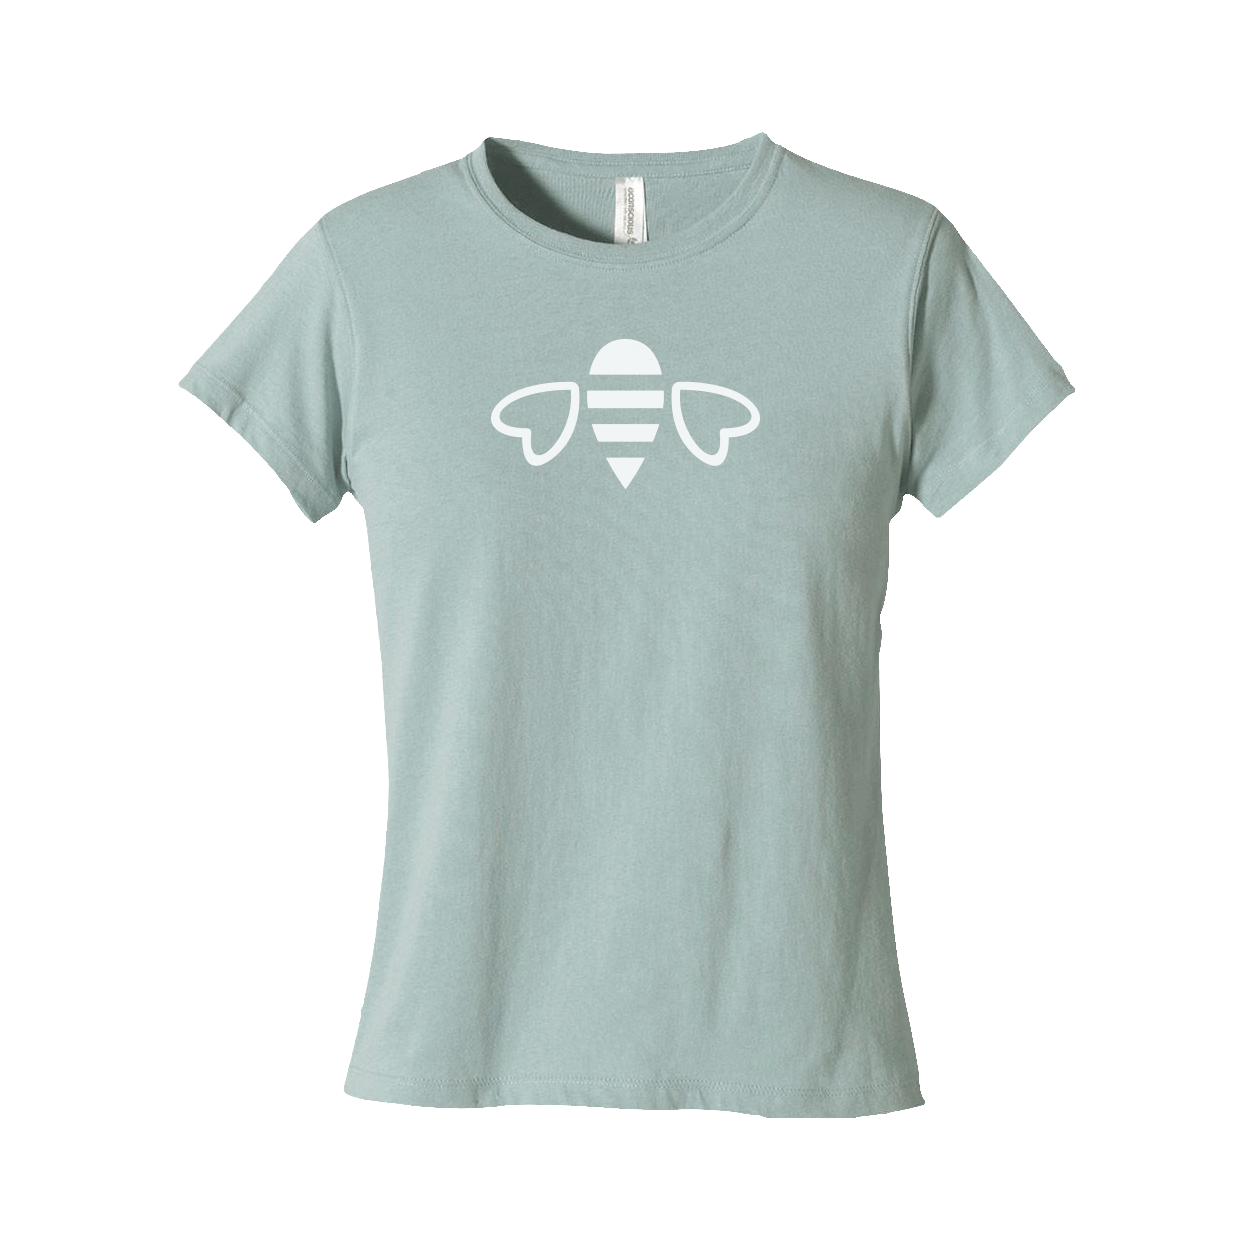 Women's classic t-shirt